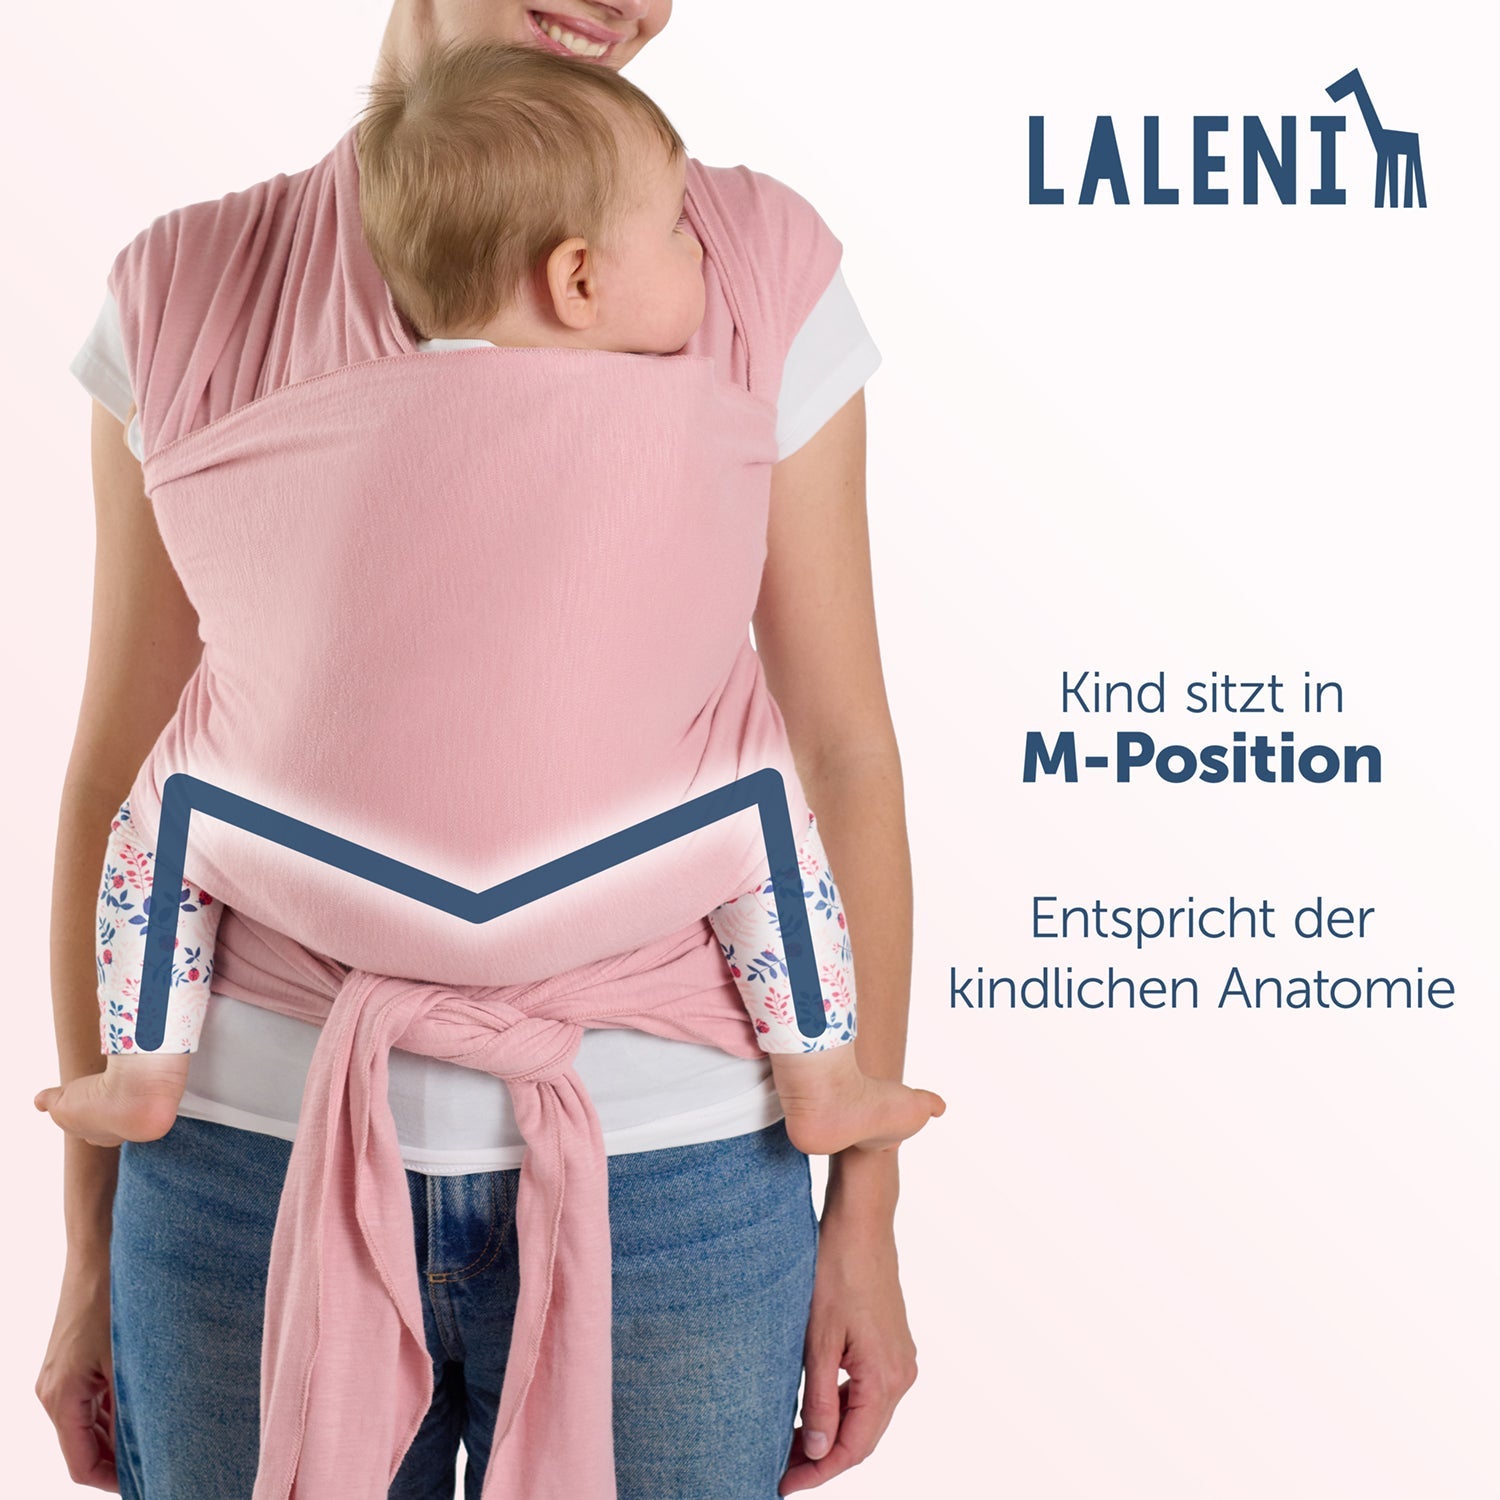 Rückenansicht einer Frau mit Baby in rosa Tragehilfe die M-Position und anatomische Korrektheit des Sitzes werden hervorgehoben.